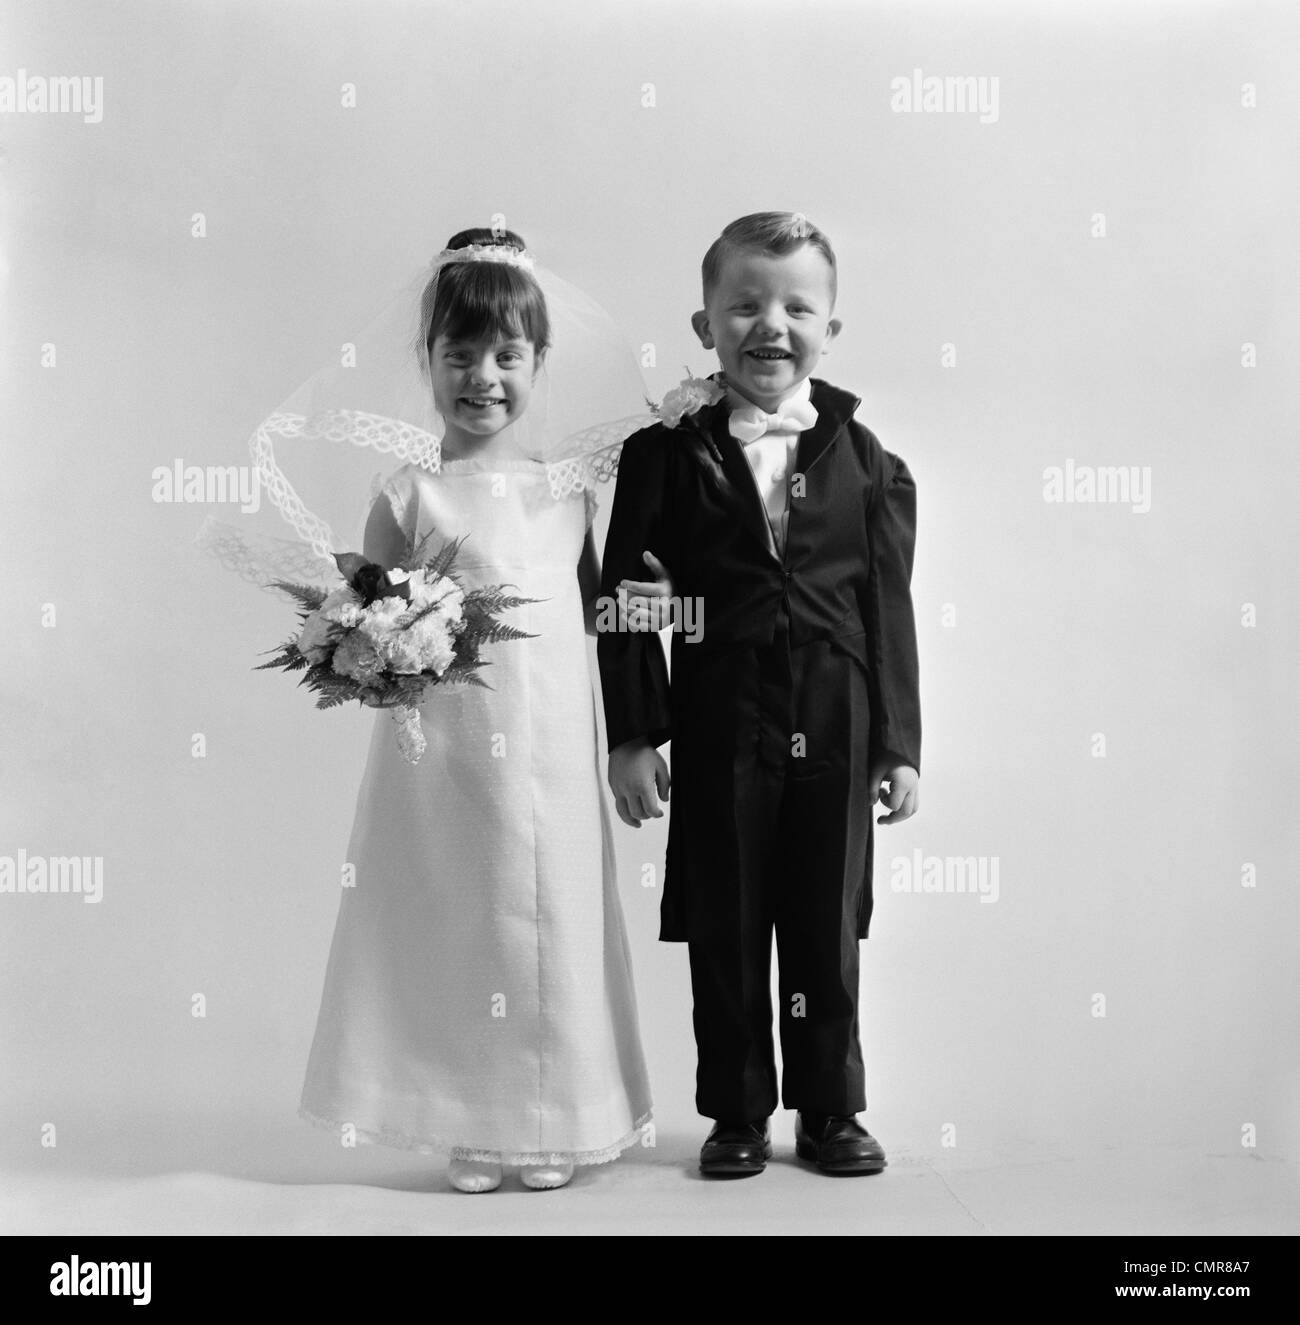 1950s CHILDREN GROOM BRIDE WEDDING Stock Photo